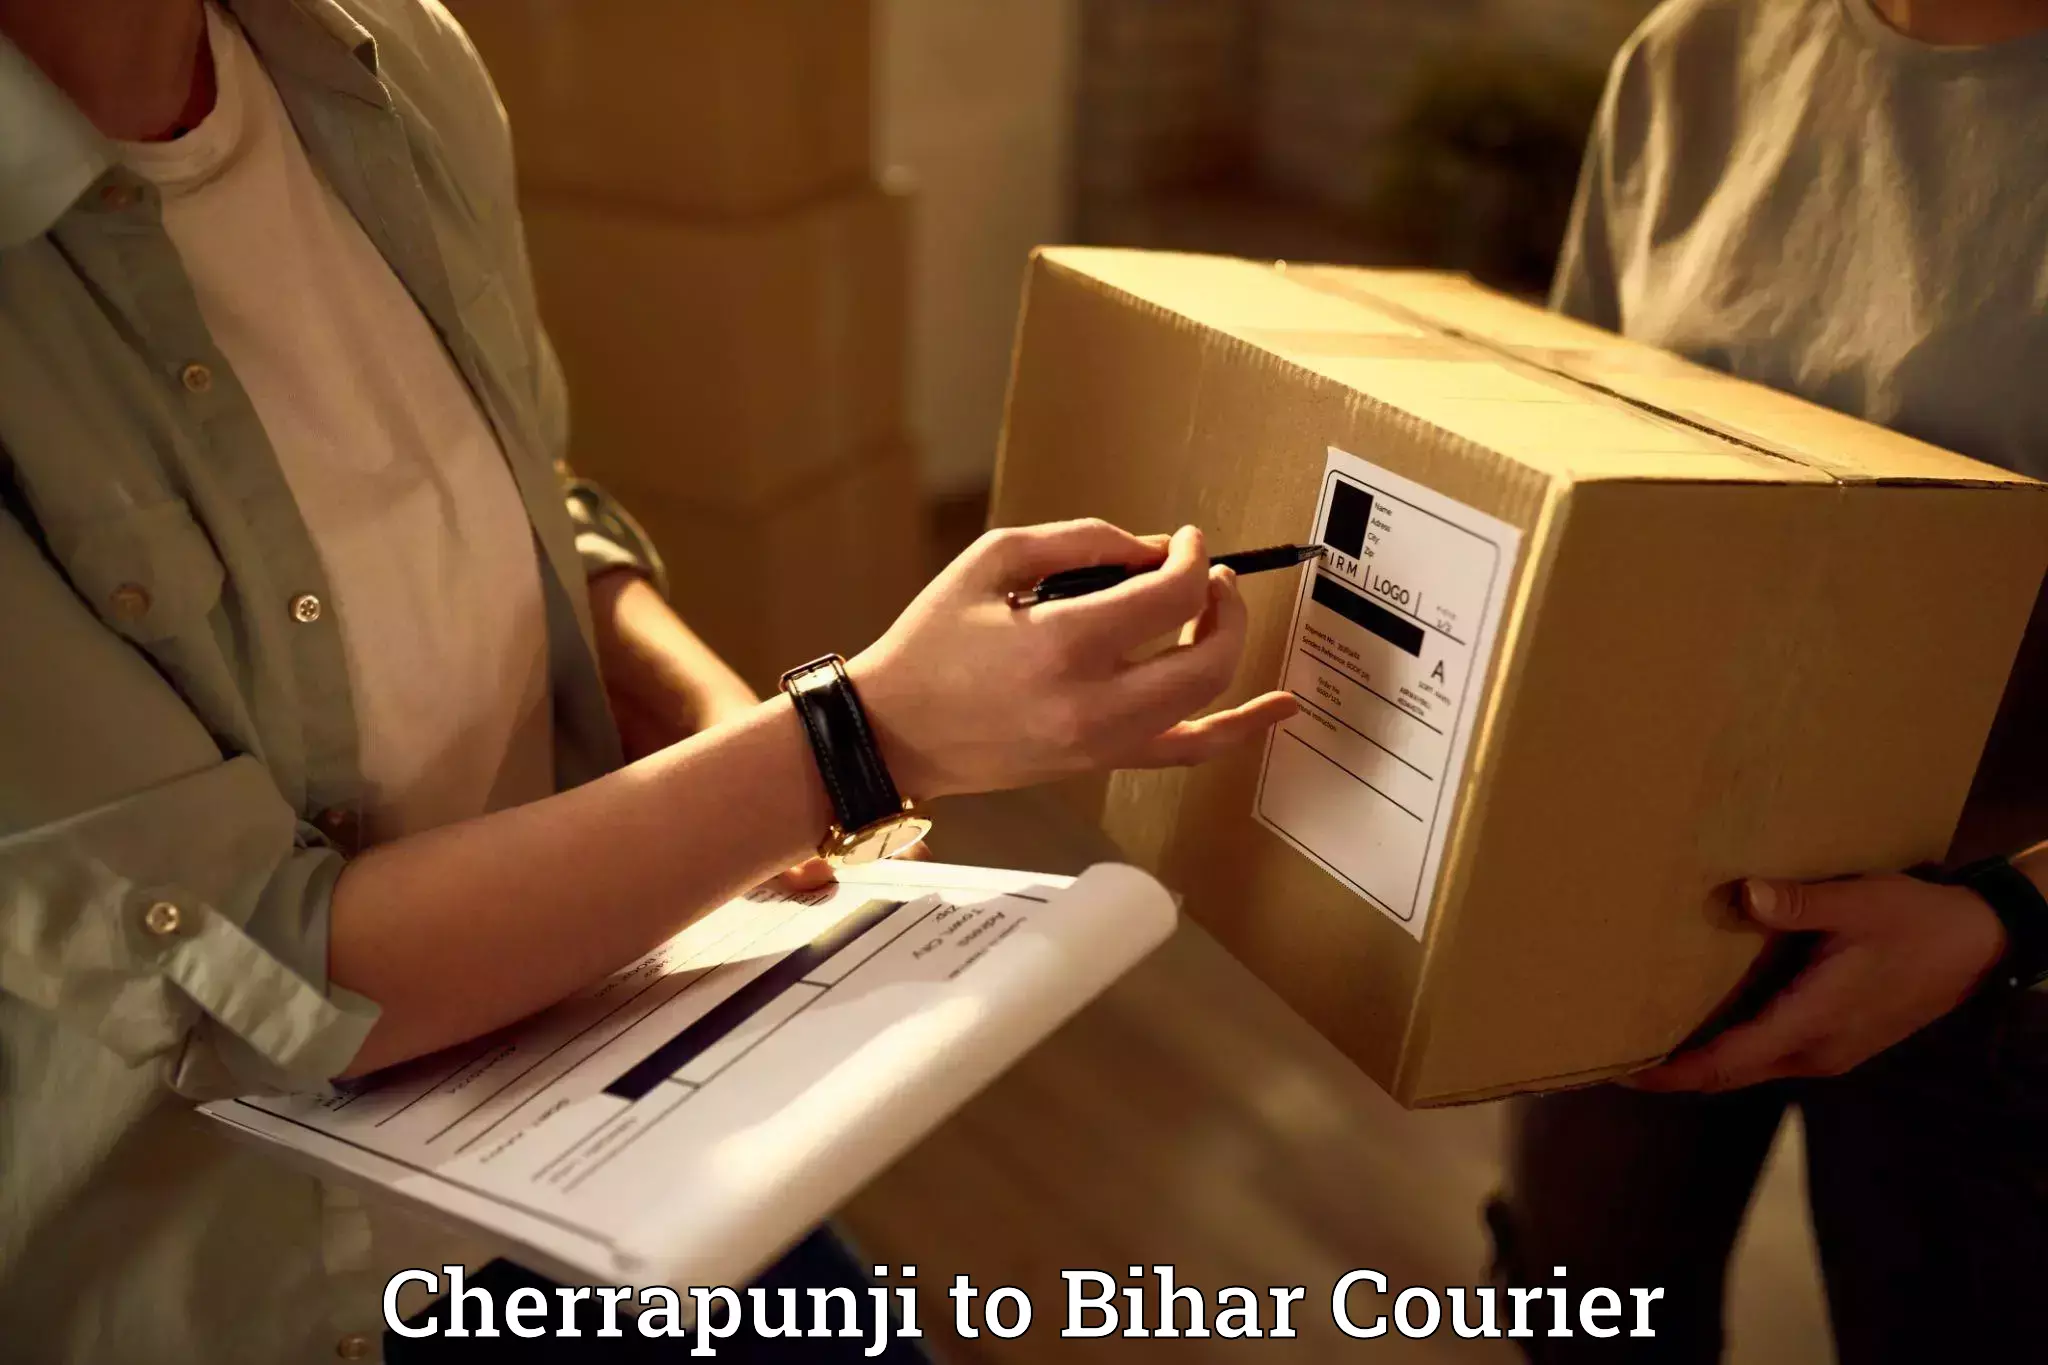 Furniture transport professionals Cherrapunji to Danapur